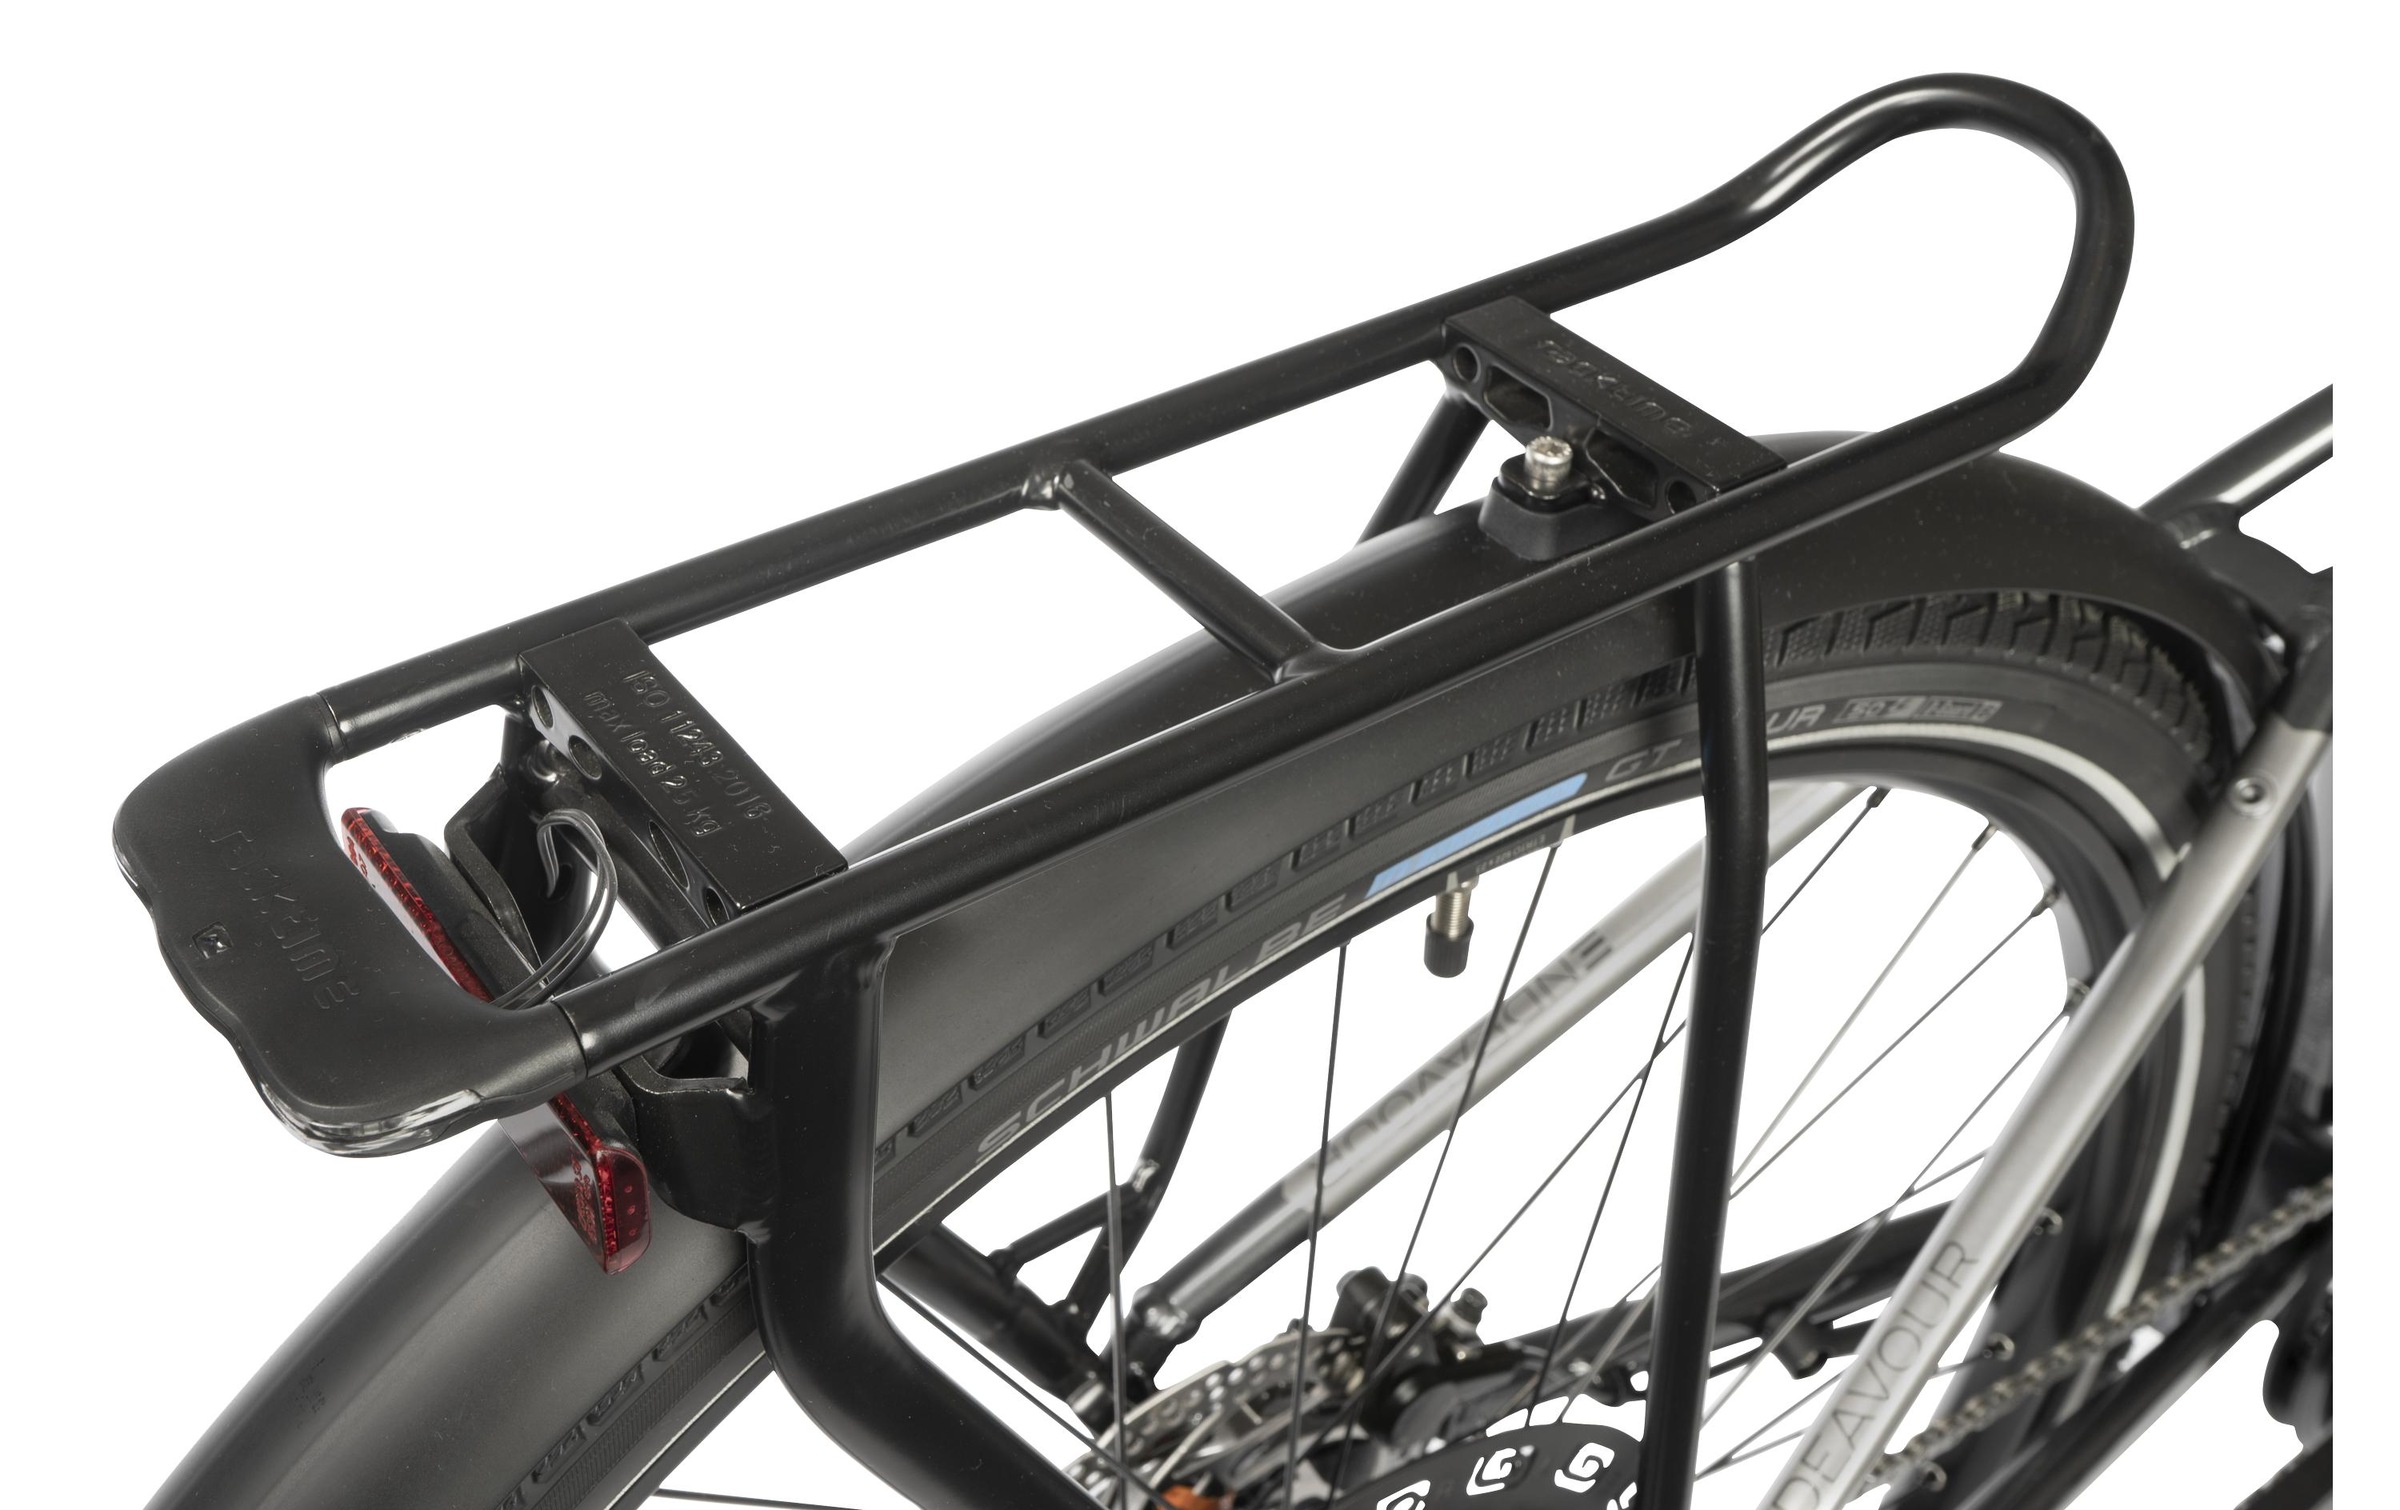 Kalkhoff E-Bike »Endeavour T«, Mittelmotor 250 W, Montagezustand 90% - nähere Informationen siehe Beschreibung